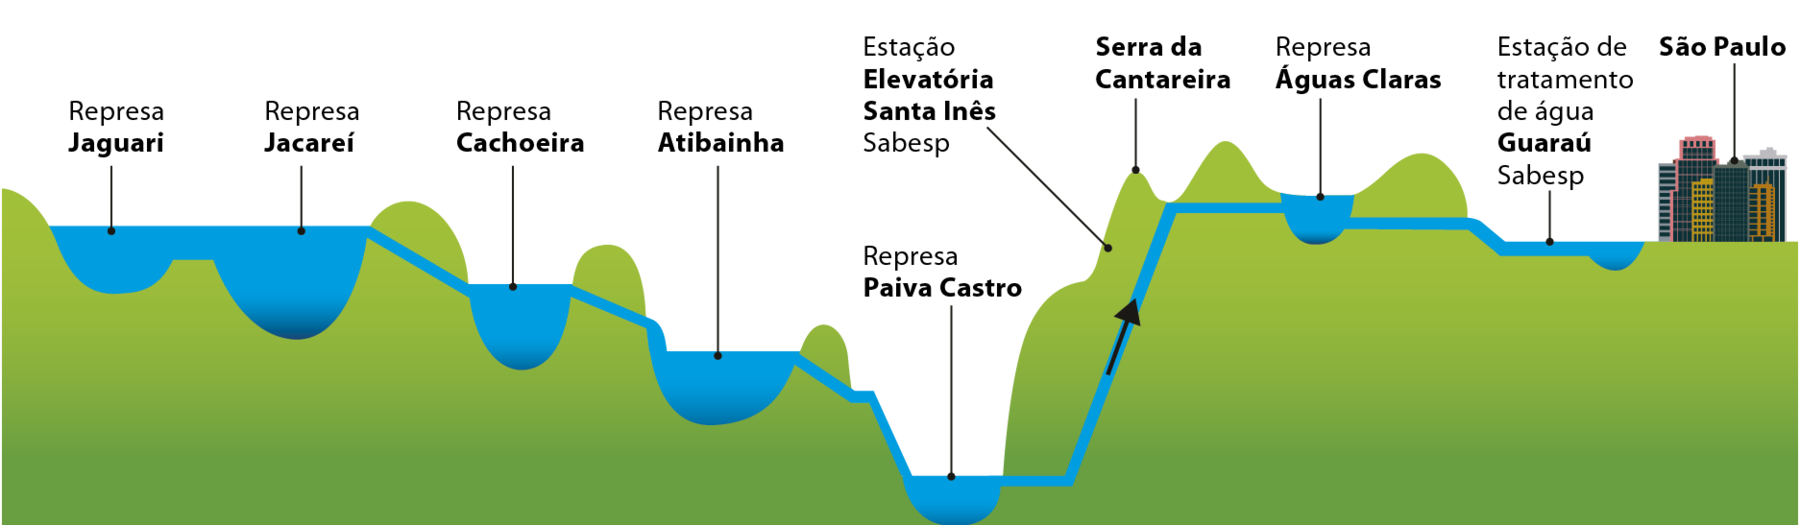 Ilustração. Sistema Cantareira de abastecimento de água em São Paulo. Ilustração representando um perfil de relevo montanhoso de cor verde e um conjunto de represas de cor azul, situadas nos vales e interligadas entre si. À esquerda, na porção mais alta do relevo, está situado o primeiro vale com a Represa Jaguari. Uma linha azul, representando a água, segue para a direita da ilustração, cortando a vertente seguinte para indicar que a Represa Jaguari está conectada ao próximo vale, onde está situada a Represa Cachoeira, em uma altitude um pouco mais baixa do relevo. A linha azul corta a vertente seguinte, em uma altitude mais baixa, indicando que a Represa Cachoeira está conectada ao próximo vale, onde está situada a Represa Atibainha. A linha azul corta a vertente seguinte, em uma altitude mais baixa, indicando que a Represa Atibainha está conectada ao próximo vale, onde está situada a Represa Paiva Castro, o ponto mais baixo do relevo. A linha azul, associada à uma seta preta se eleva na direção diagonal até alcançar o ponto mais alto do relevo, representado pela Serra da Cantareira. Na vertente da esquerda da serra, entre o pico da serra e à Represa Paiva Castro, consta a localização da Estação Elevatória Santa Inês, da Sabesp. Da Serra da Cantareira, a linha azul segue na direção horizontal até alcançar a Represa Águas Claras, situada em um vale na mesma altitude. Por fim, a linha azul alcança a Estação de tratamento de água Guaraú, da Sabesp, situada ao lado de diversos edifícios representados pela cidade de São Paulo.